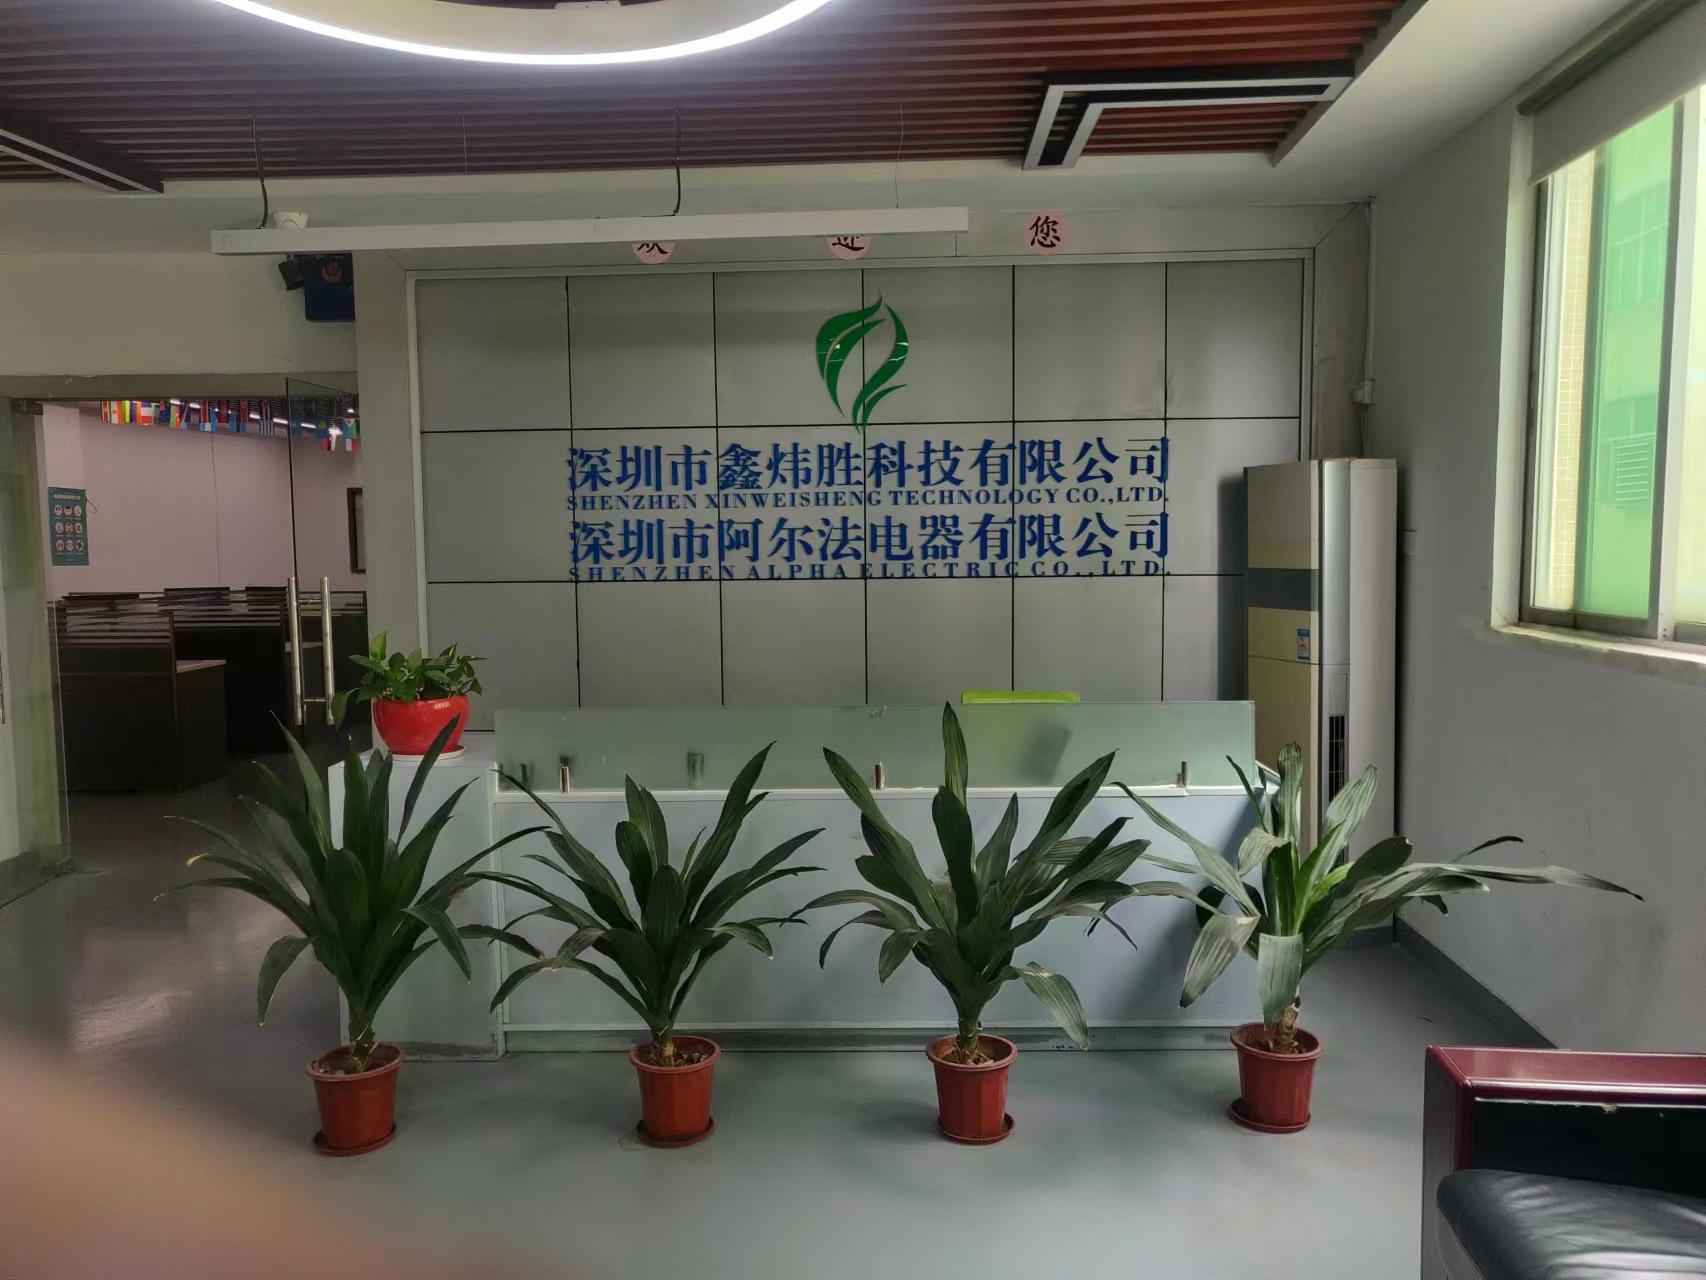     Shenzhen Xinweisheng Technology Co., Ltd